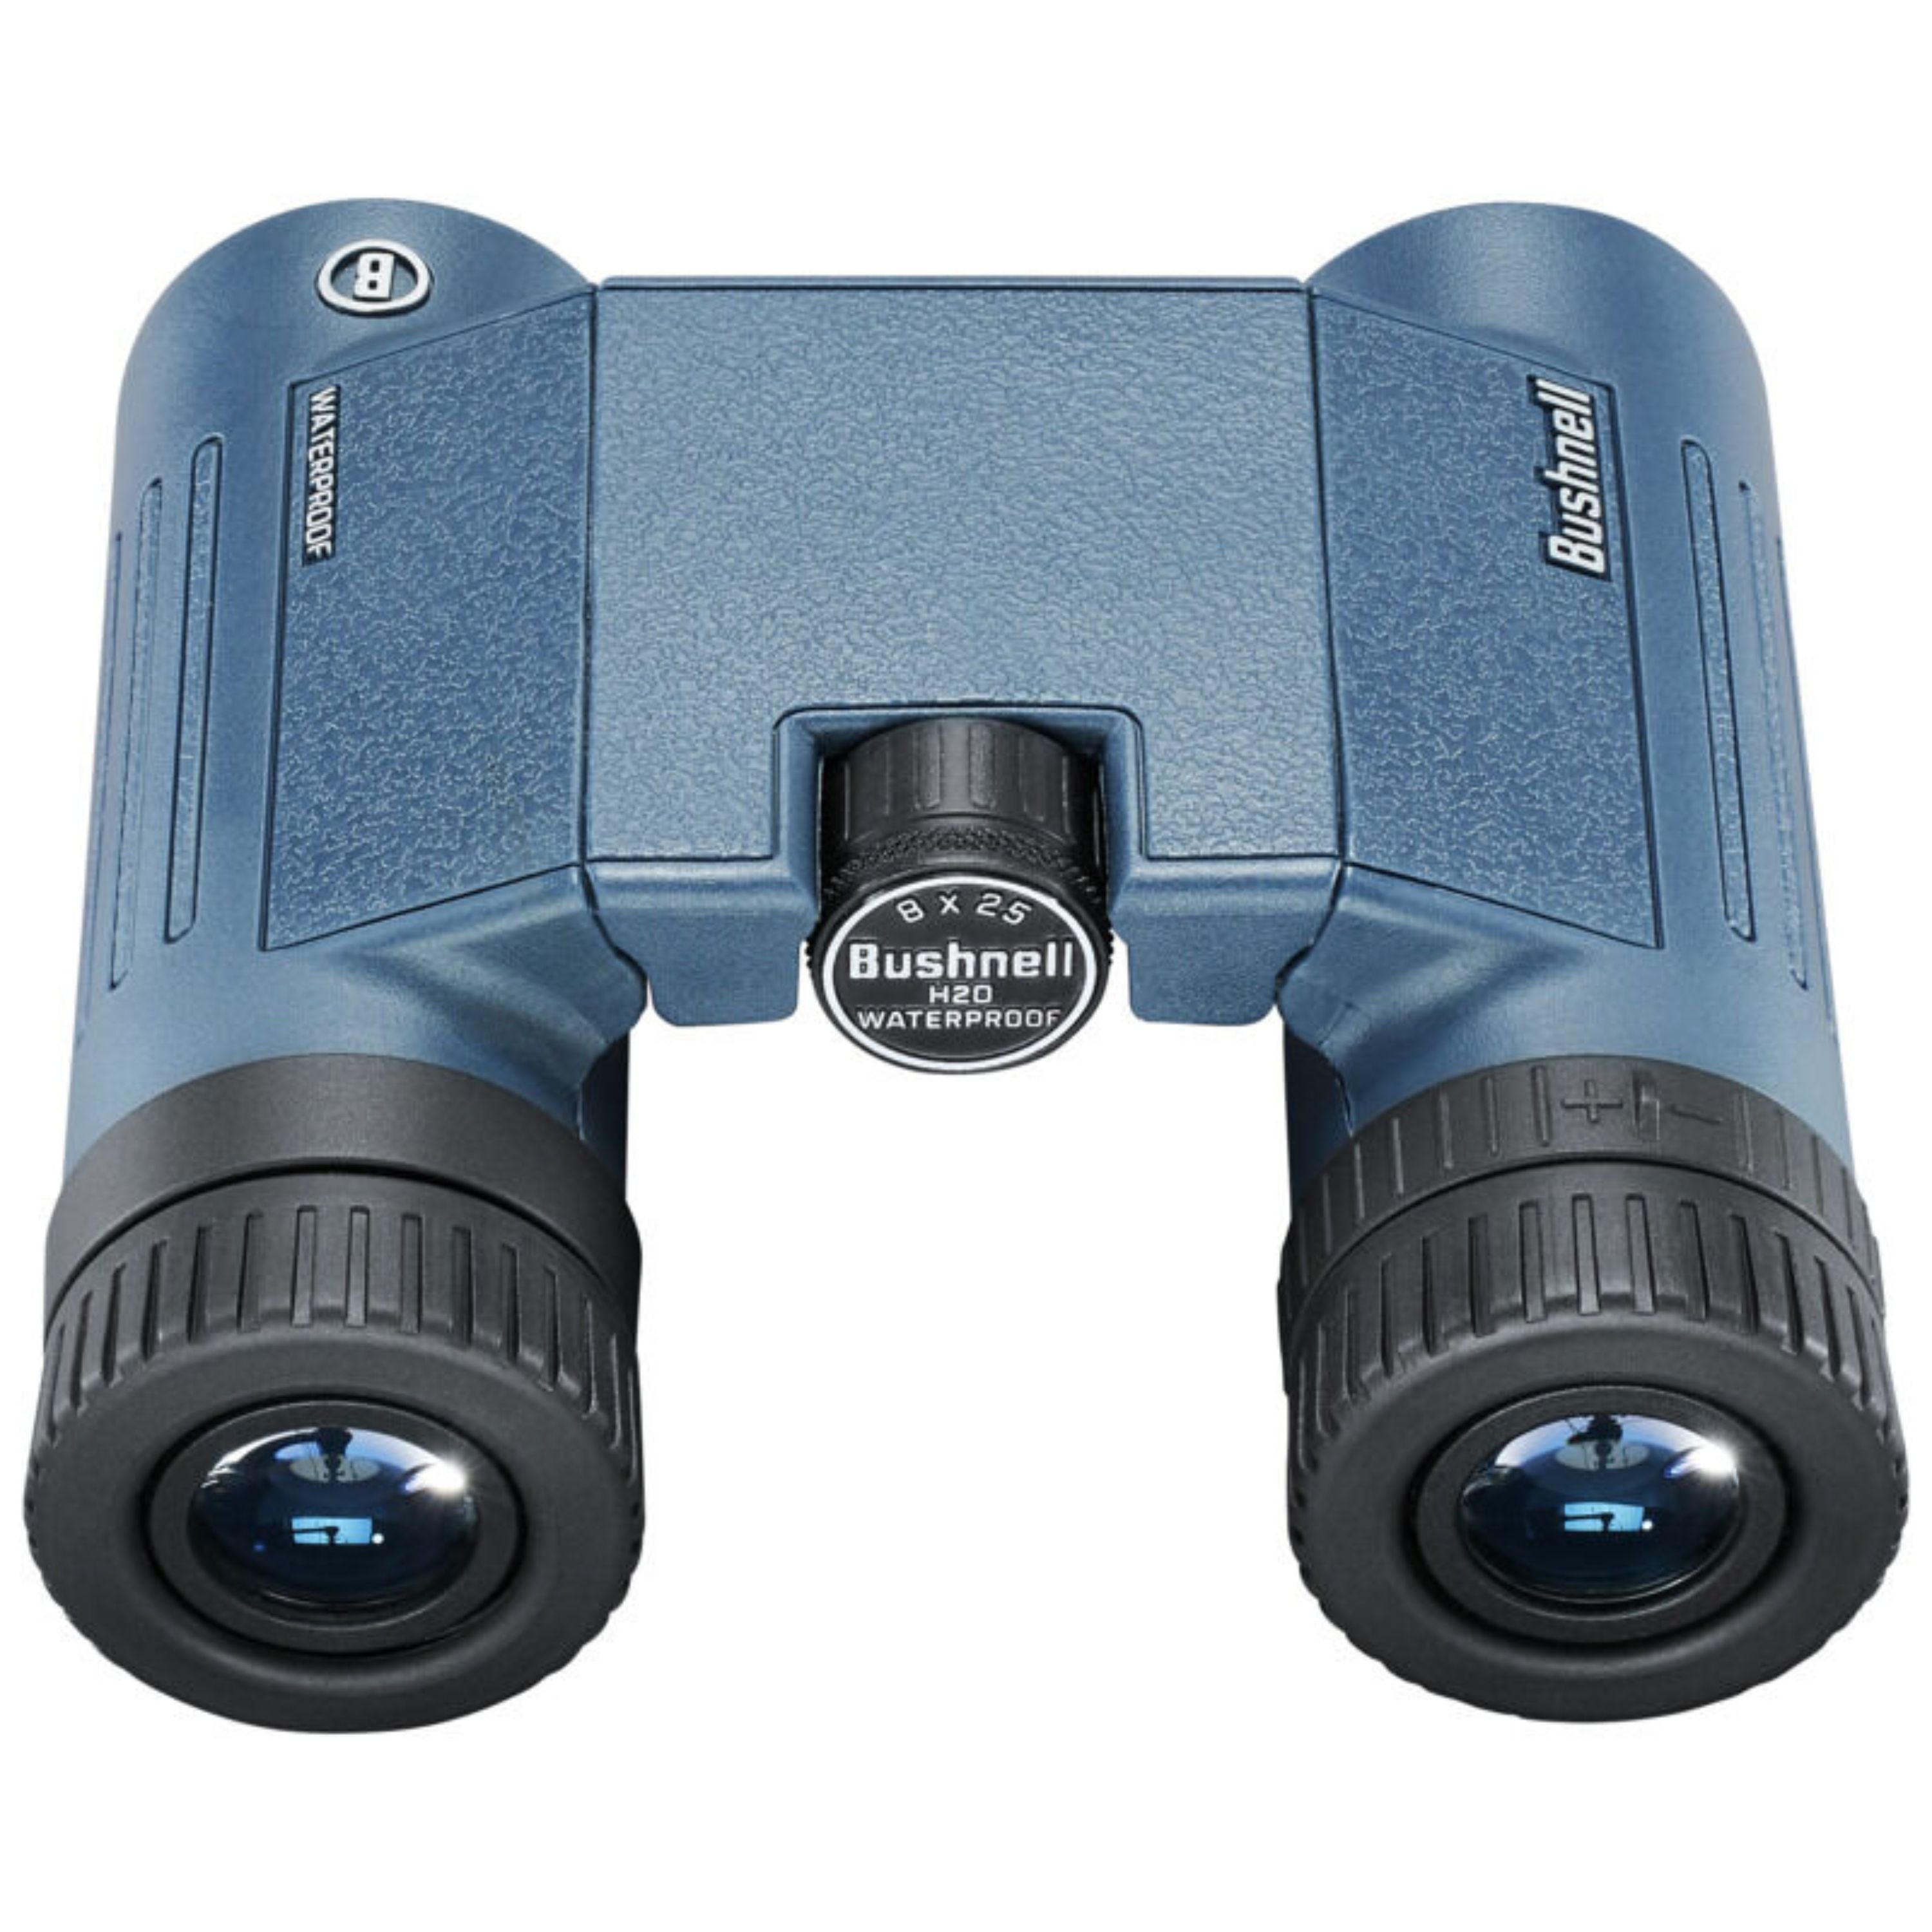 "H20" 8x25 mm binoculars